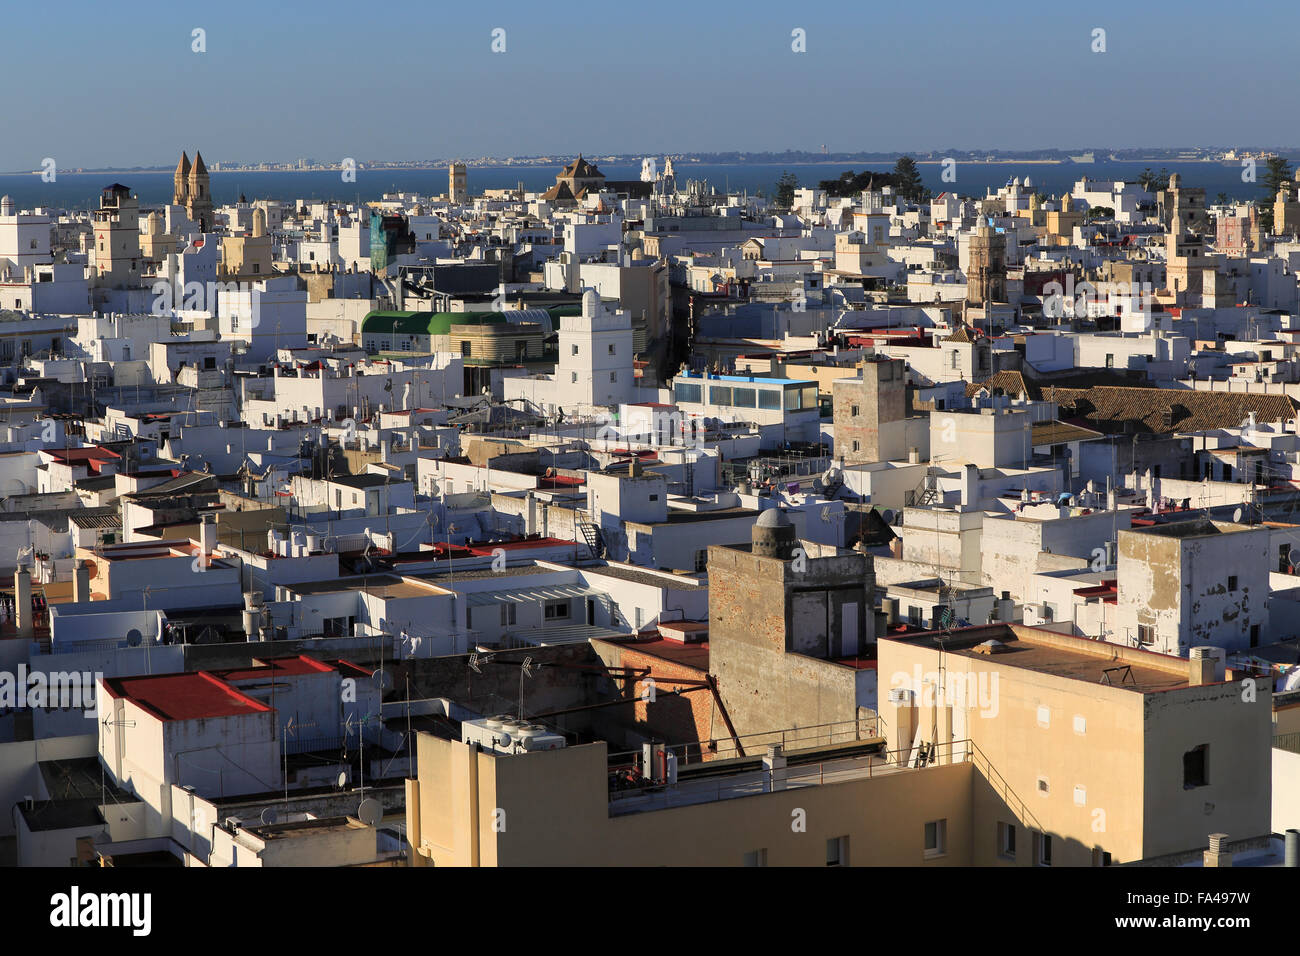 Toits de bâtiments dans le quartier de la vina, à l'ouest de toit cathédrale, Cadix, Espagne Banque D'Images